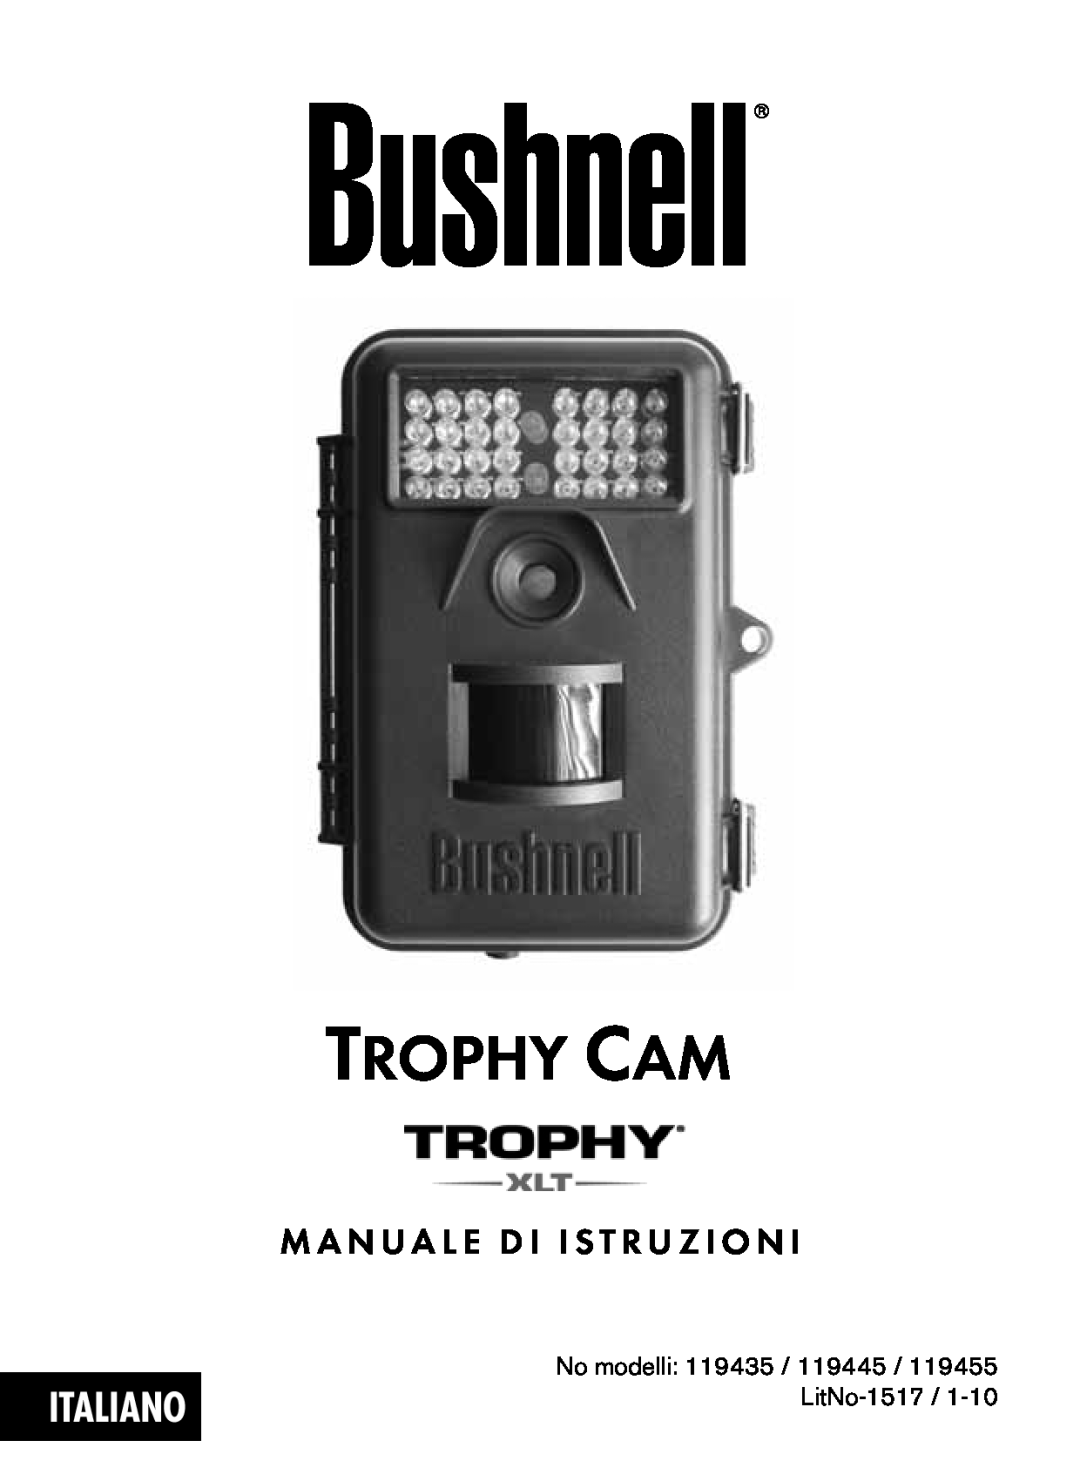 Bushnell 119435, 119455, 119445 instruction manual Italiano, M A N U A L E D I I S T R U Z I O N, Trophy Cam 